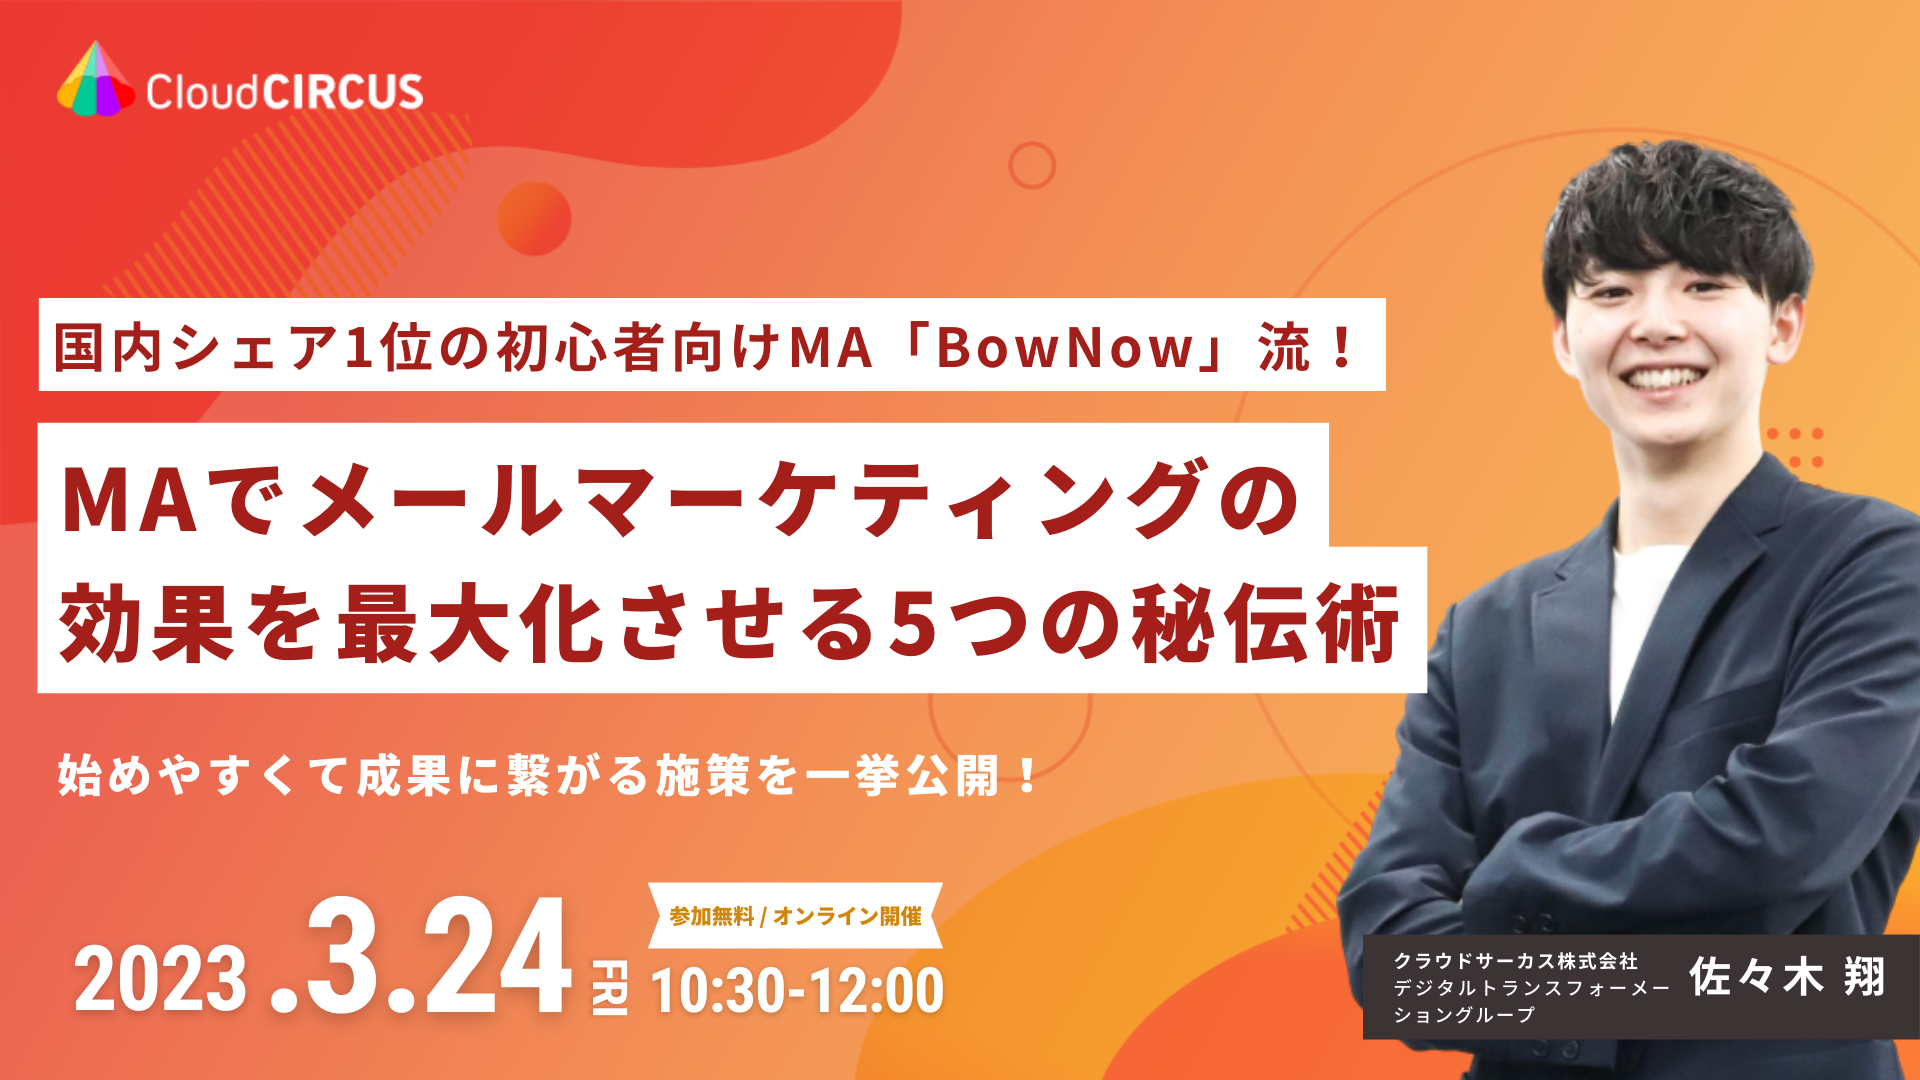 【5月19日(木)】企業情報連携項目説明会 ～BowNowで取得できる企業情報と、その活用方法について～